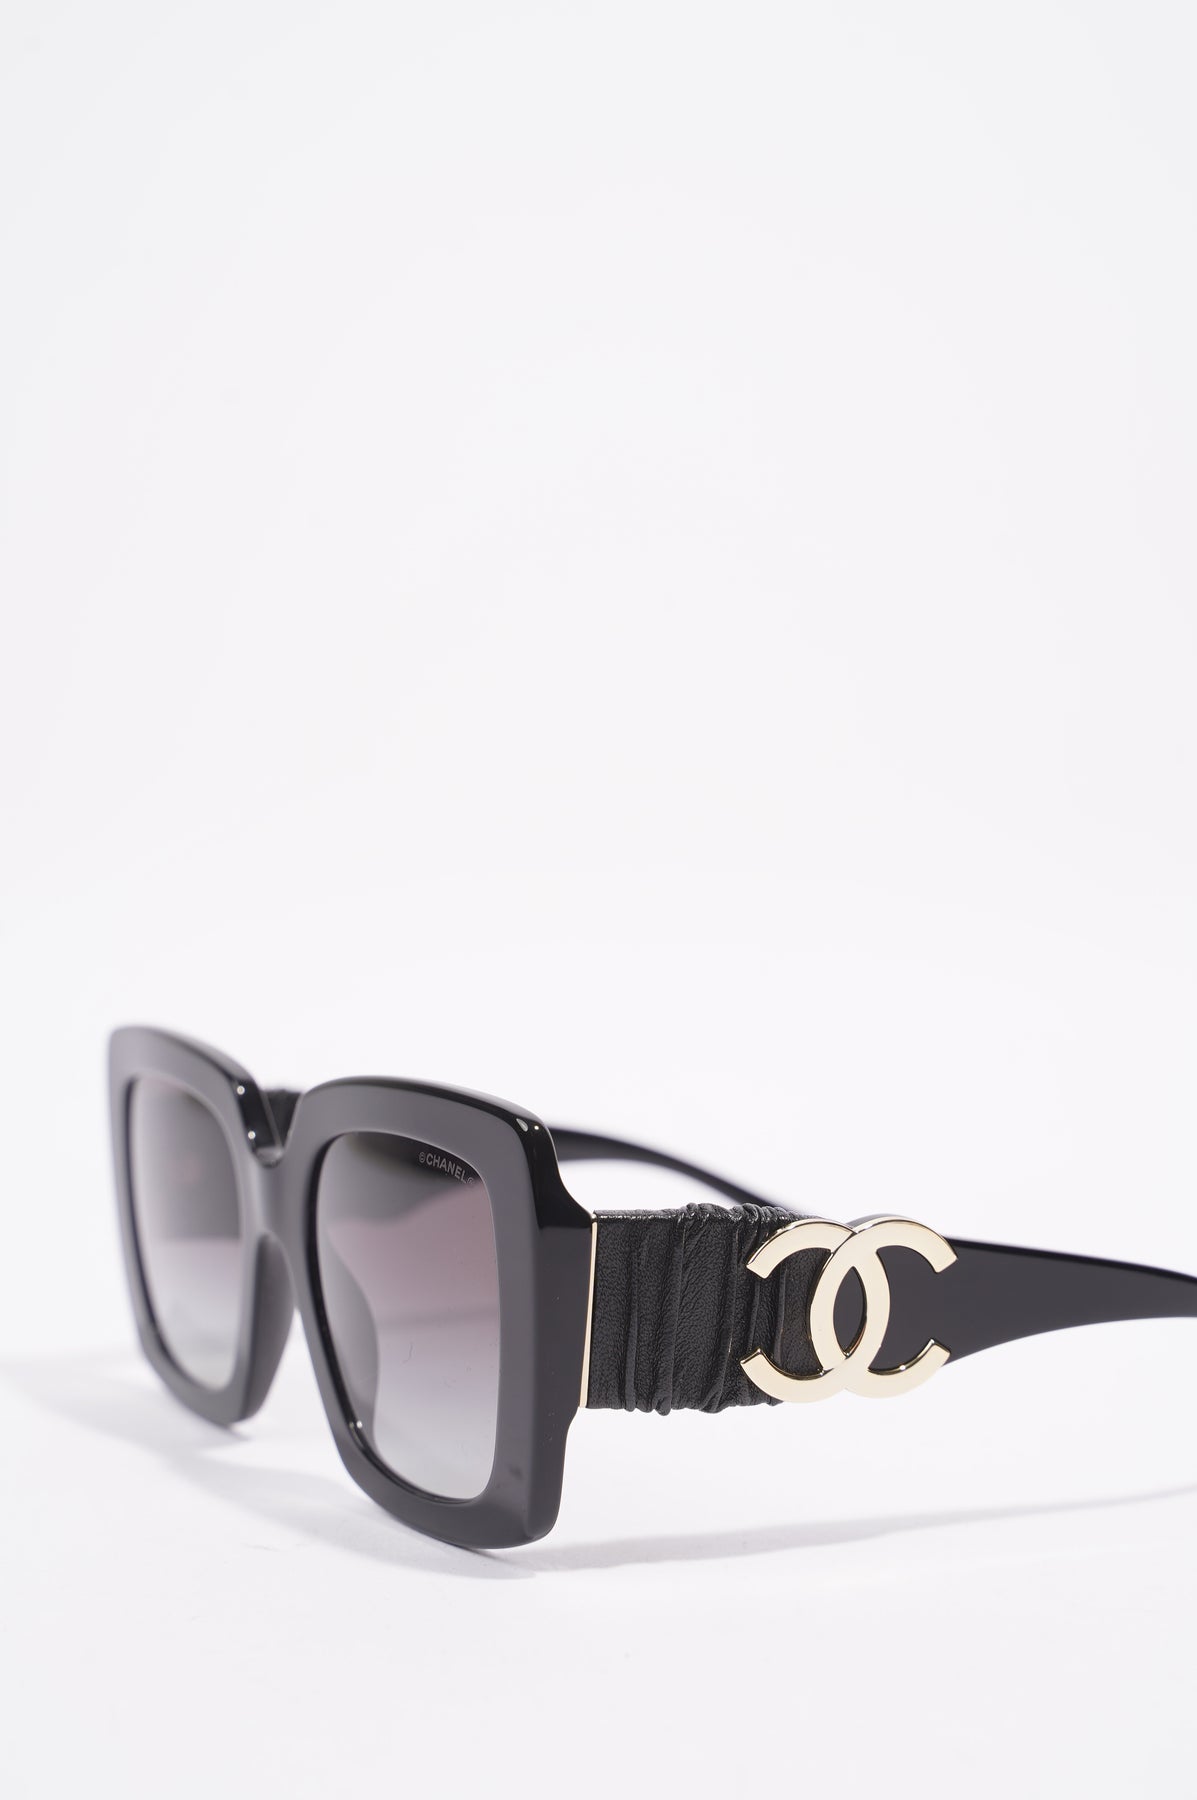 Shop CHANEL Square Sunglasses (5474Q C622/S6, 5474Q 1461/S1) by E.V.I.